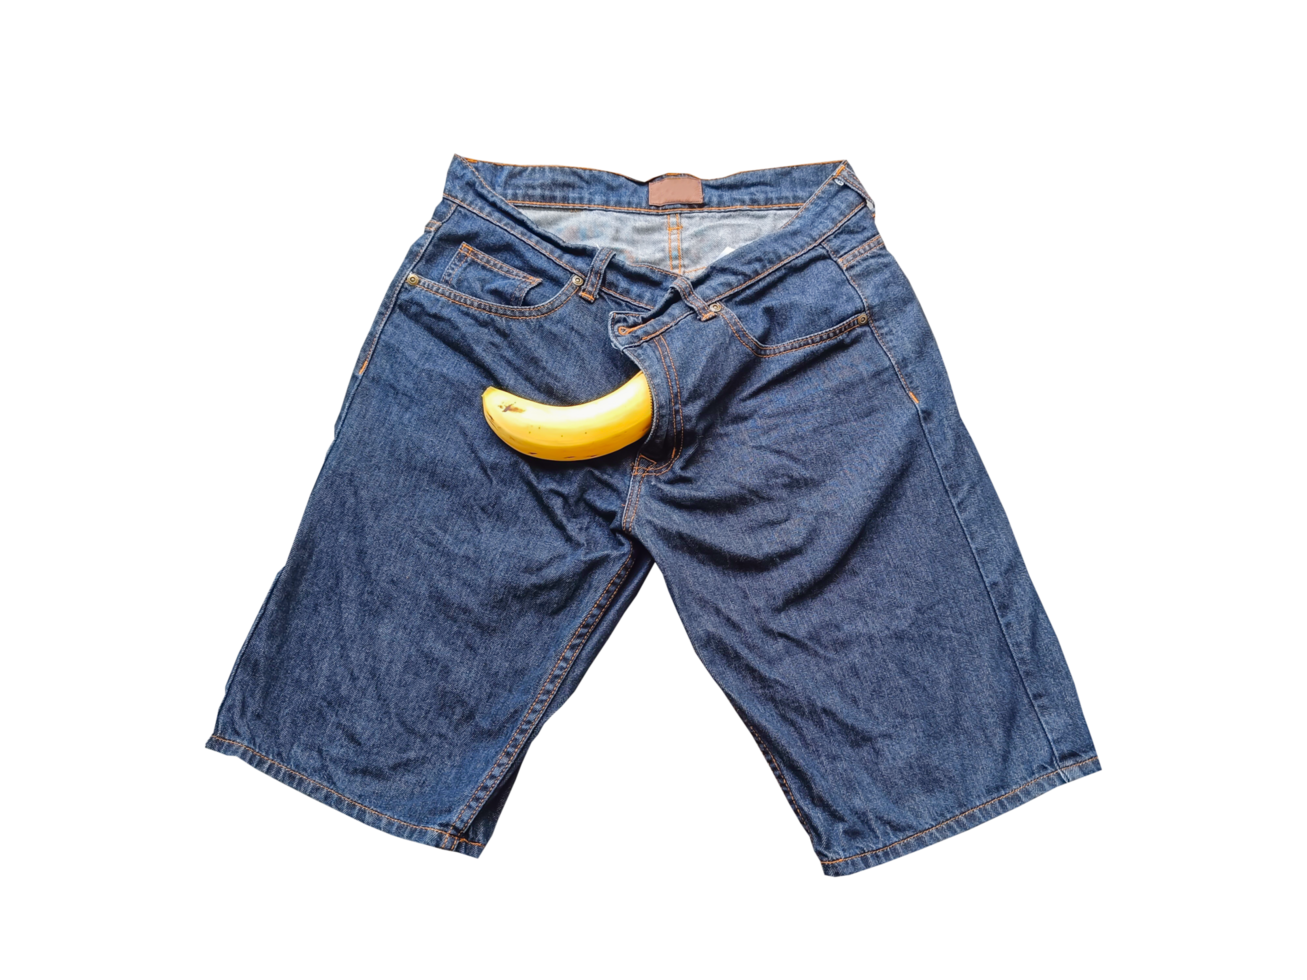 grande Banana attaccare su di Uomini jeans. sesso concetto su un' trasparente sfondo png